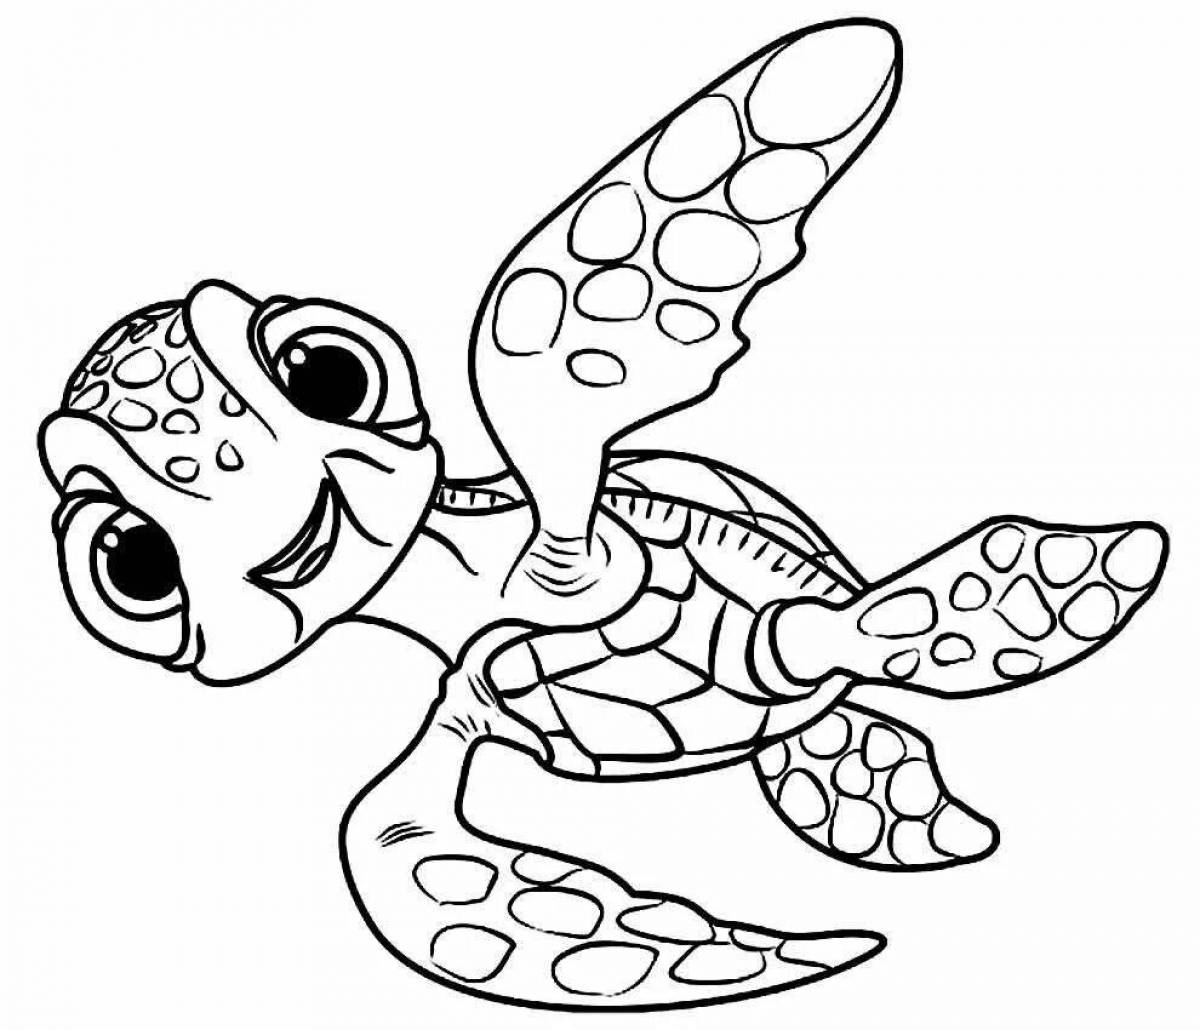 Joyful cute turtle coloring book